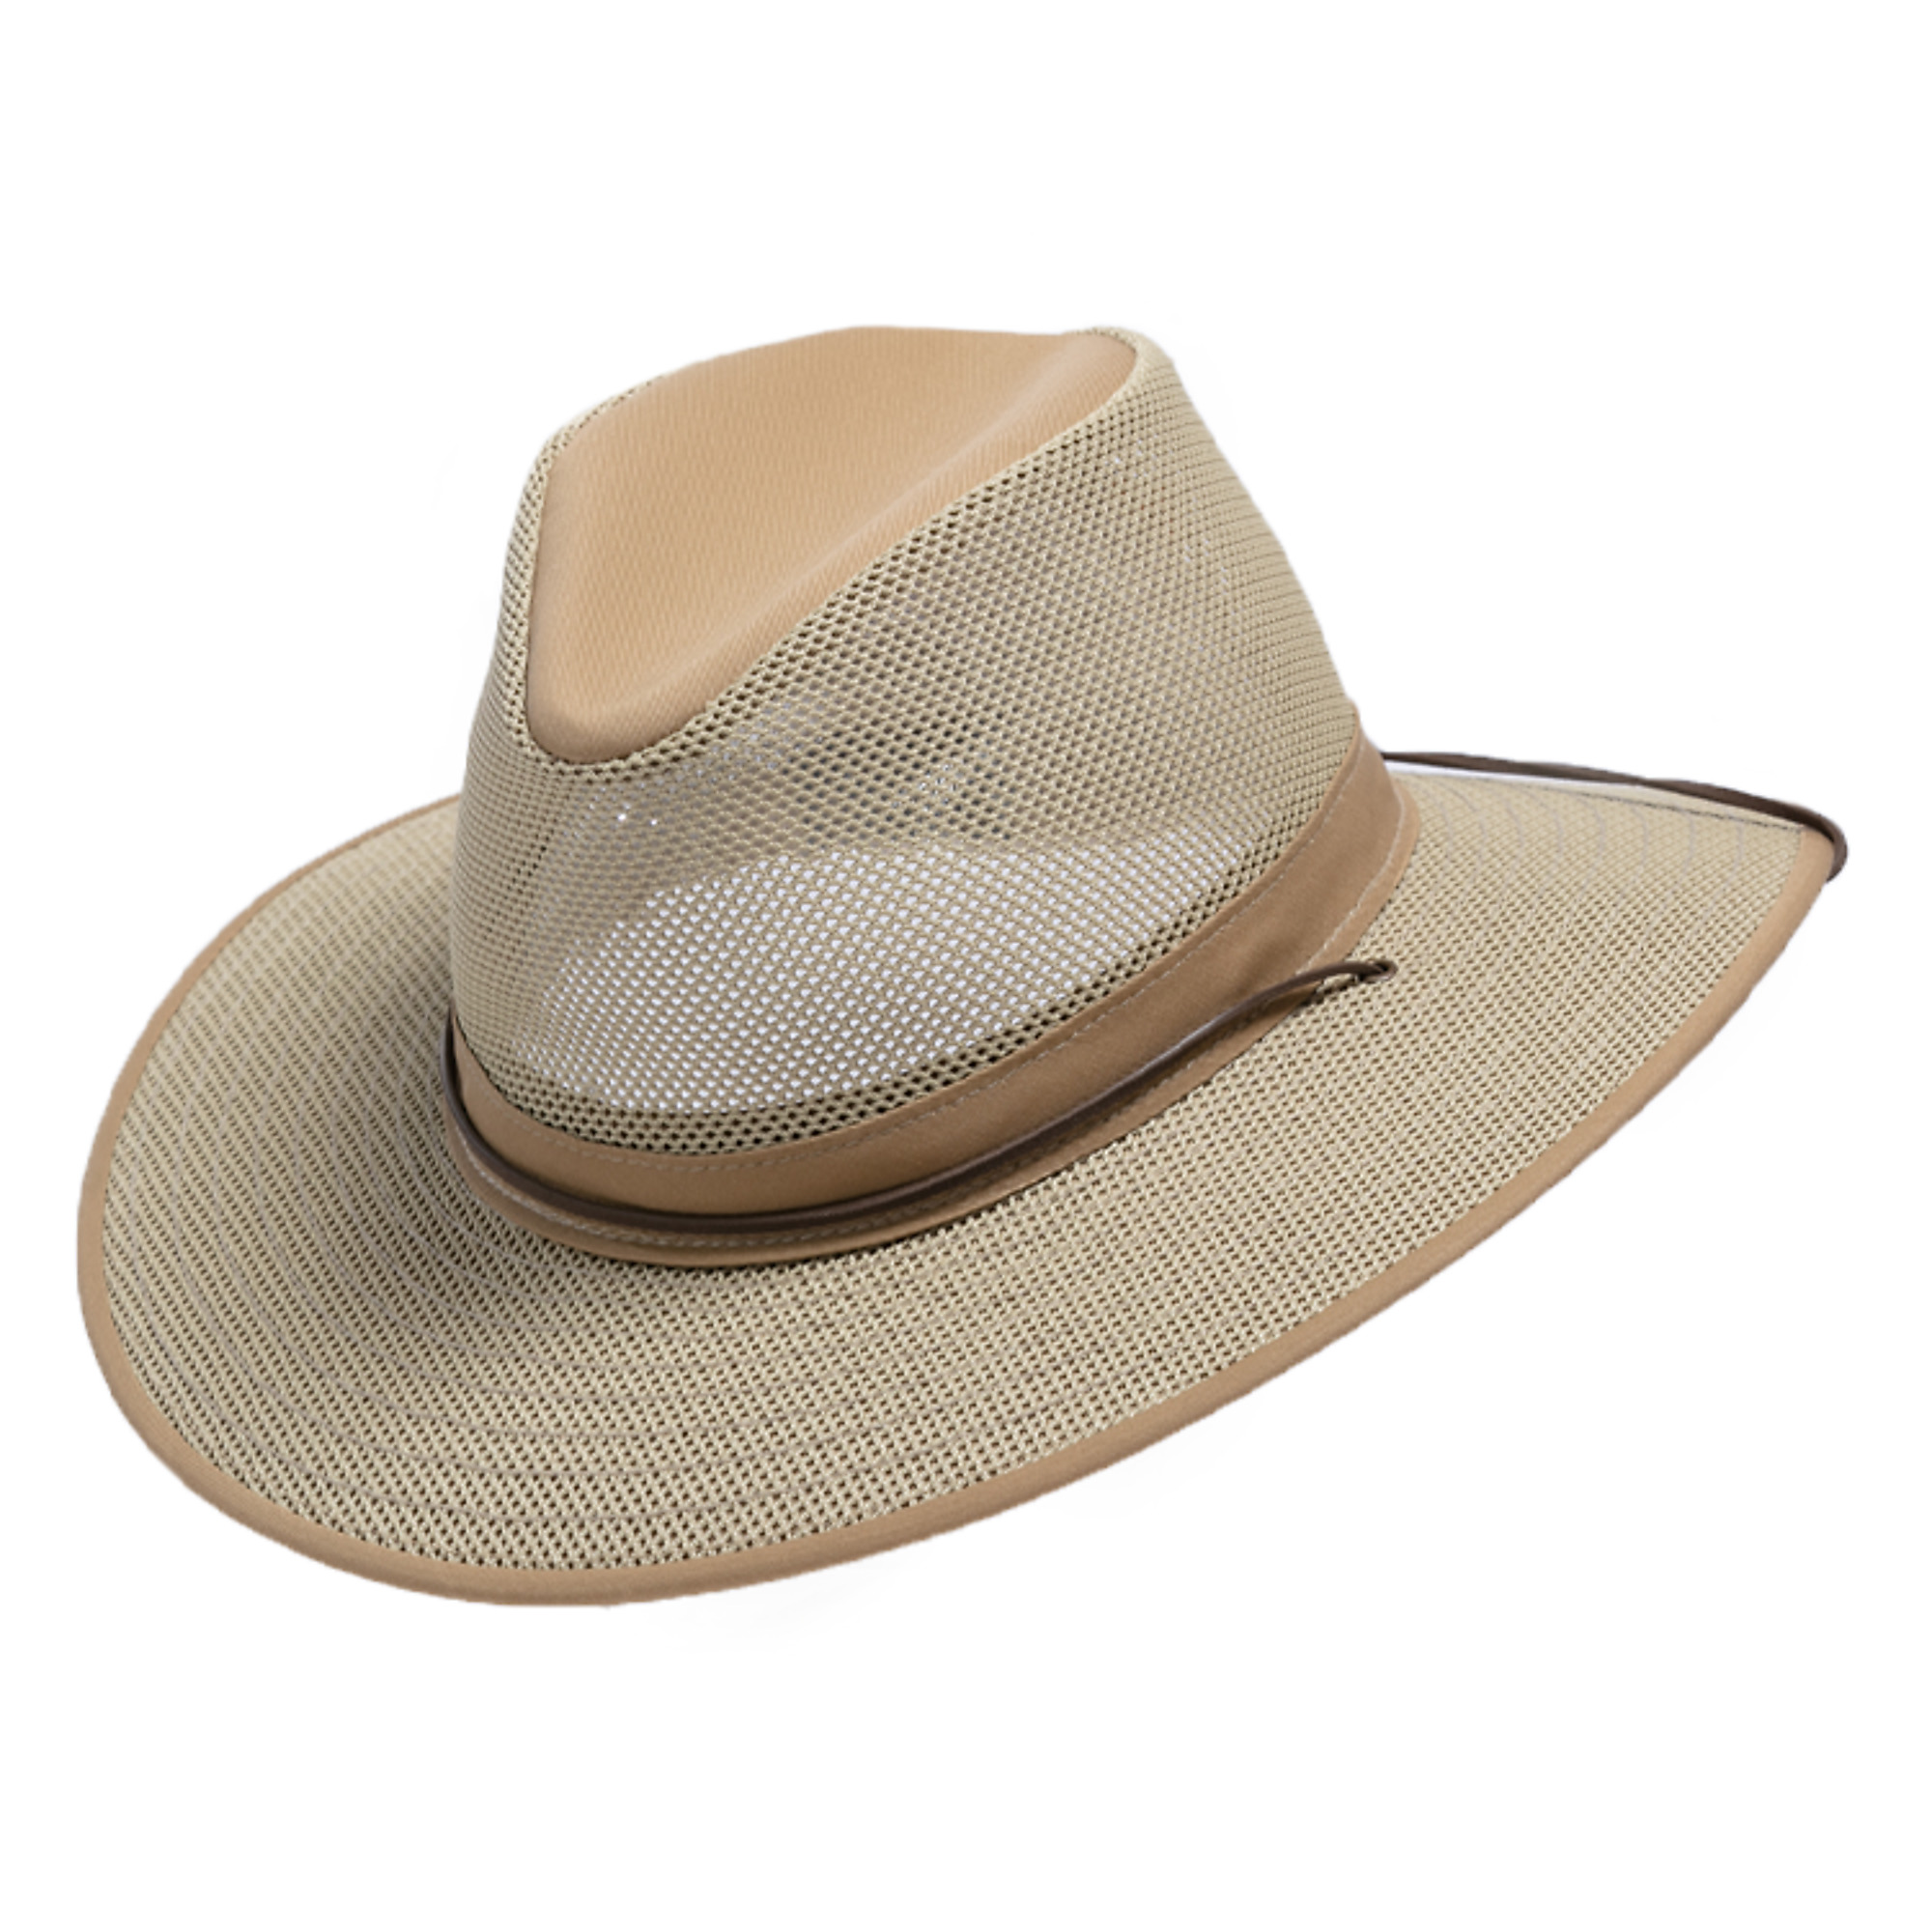 Henschel Hat Company, Orignal Aussie Breezer Hat, UPF 50+, Size M, Color Khaki, Hat Style Hat, Model 5310-95-M